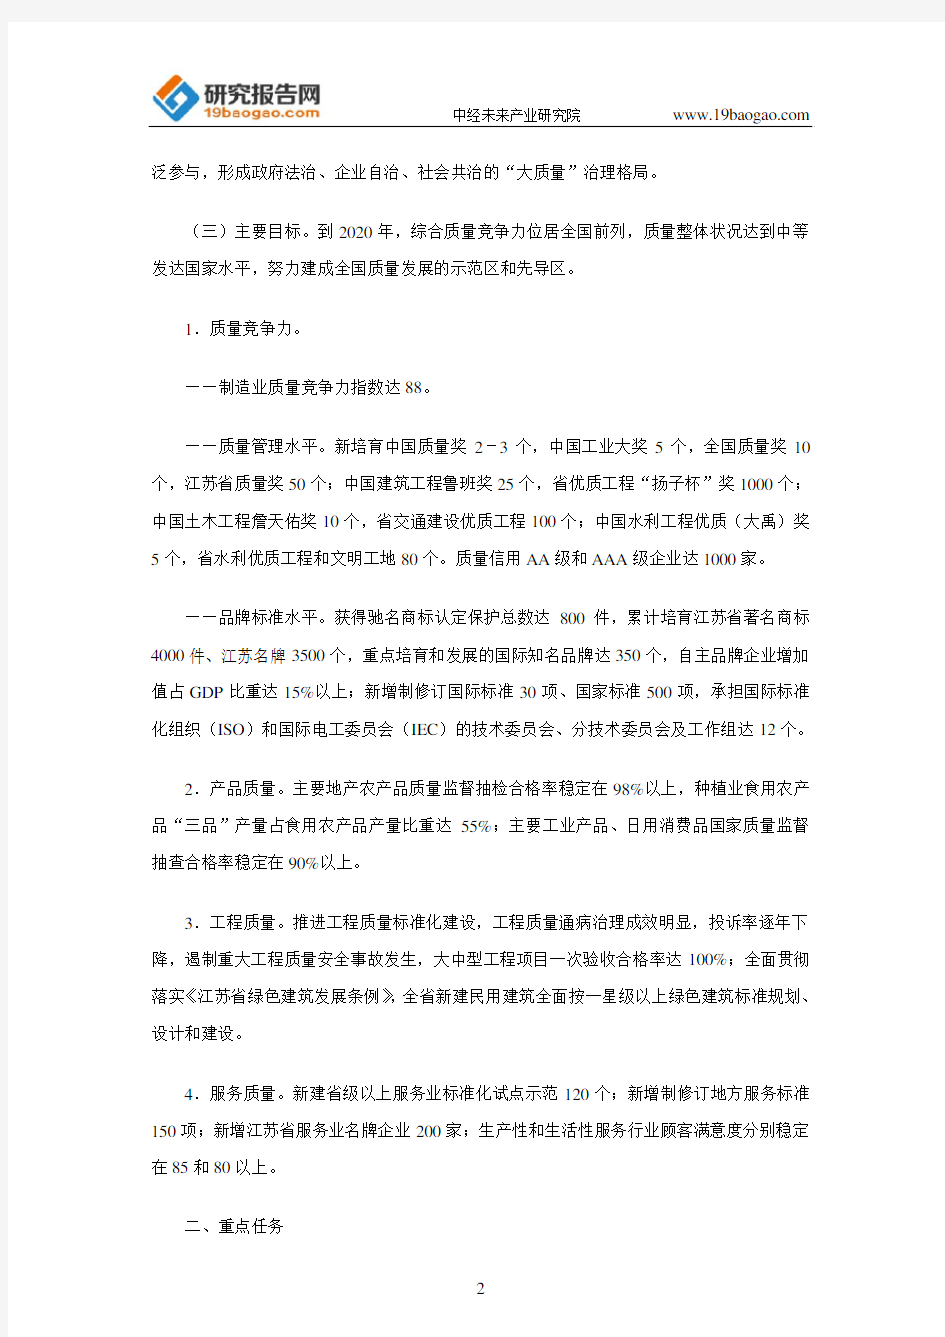 江苏省人民政府关于加快质量发展的意见